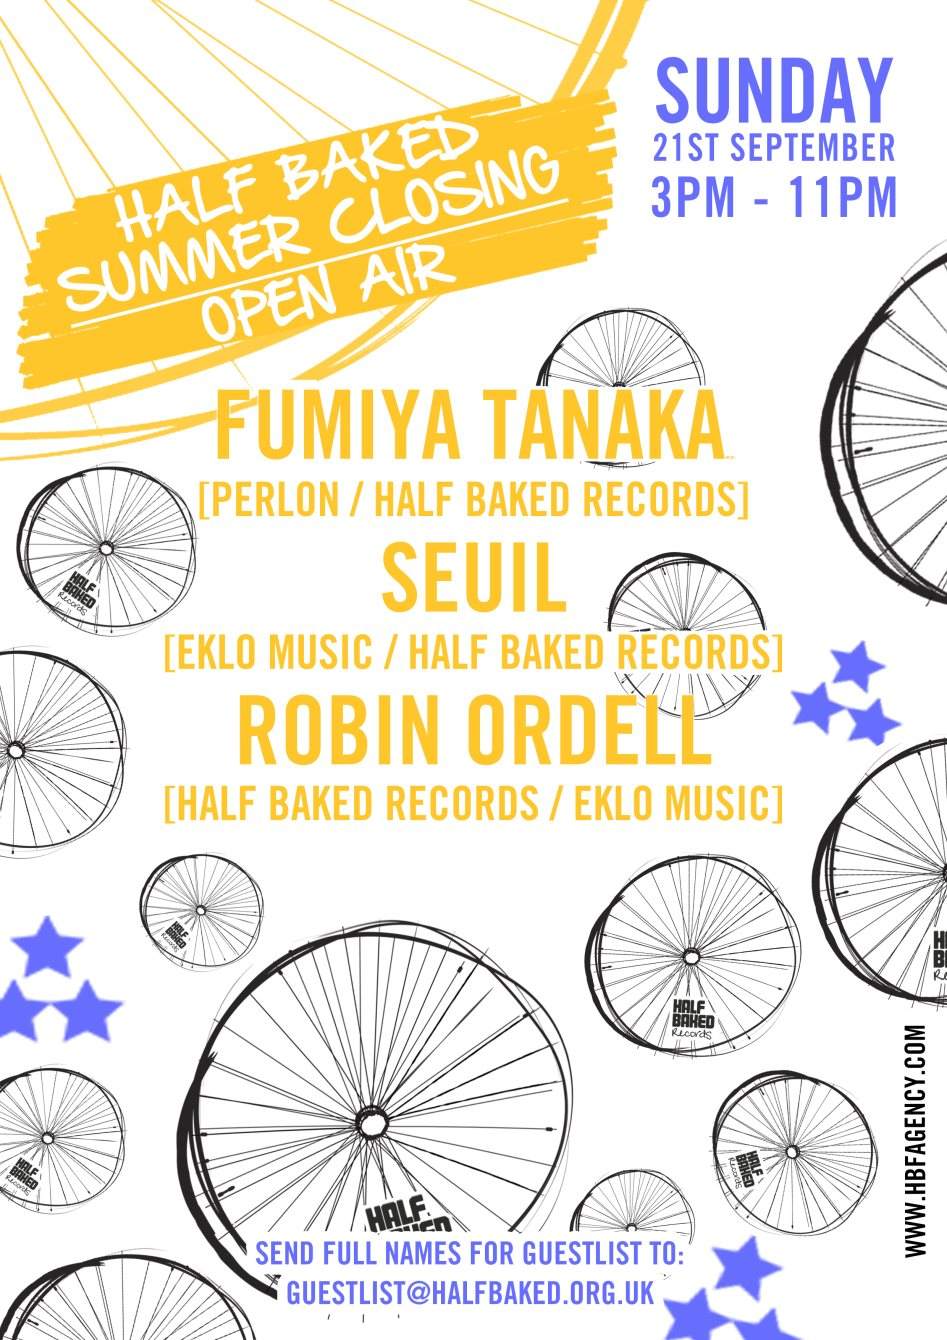 Half Baked Summer Closing Party with Fumiya Tanaka, Seuil + Robin Ordell - Página frontal